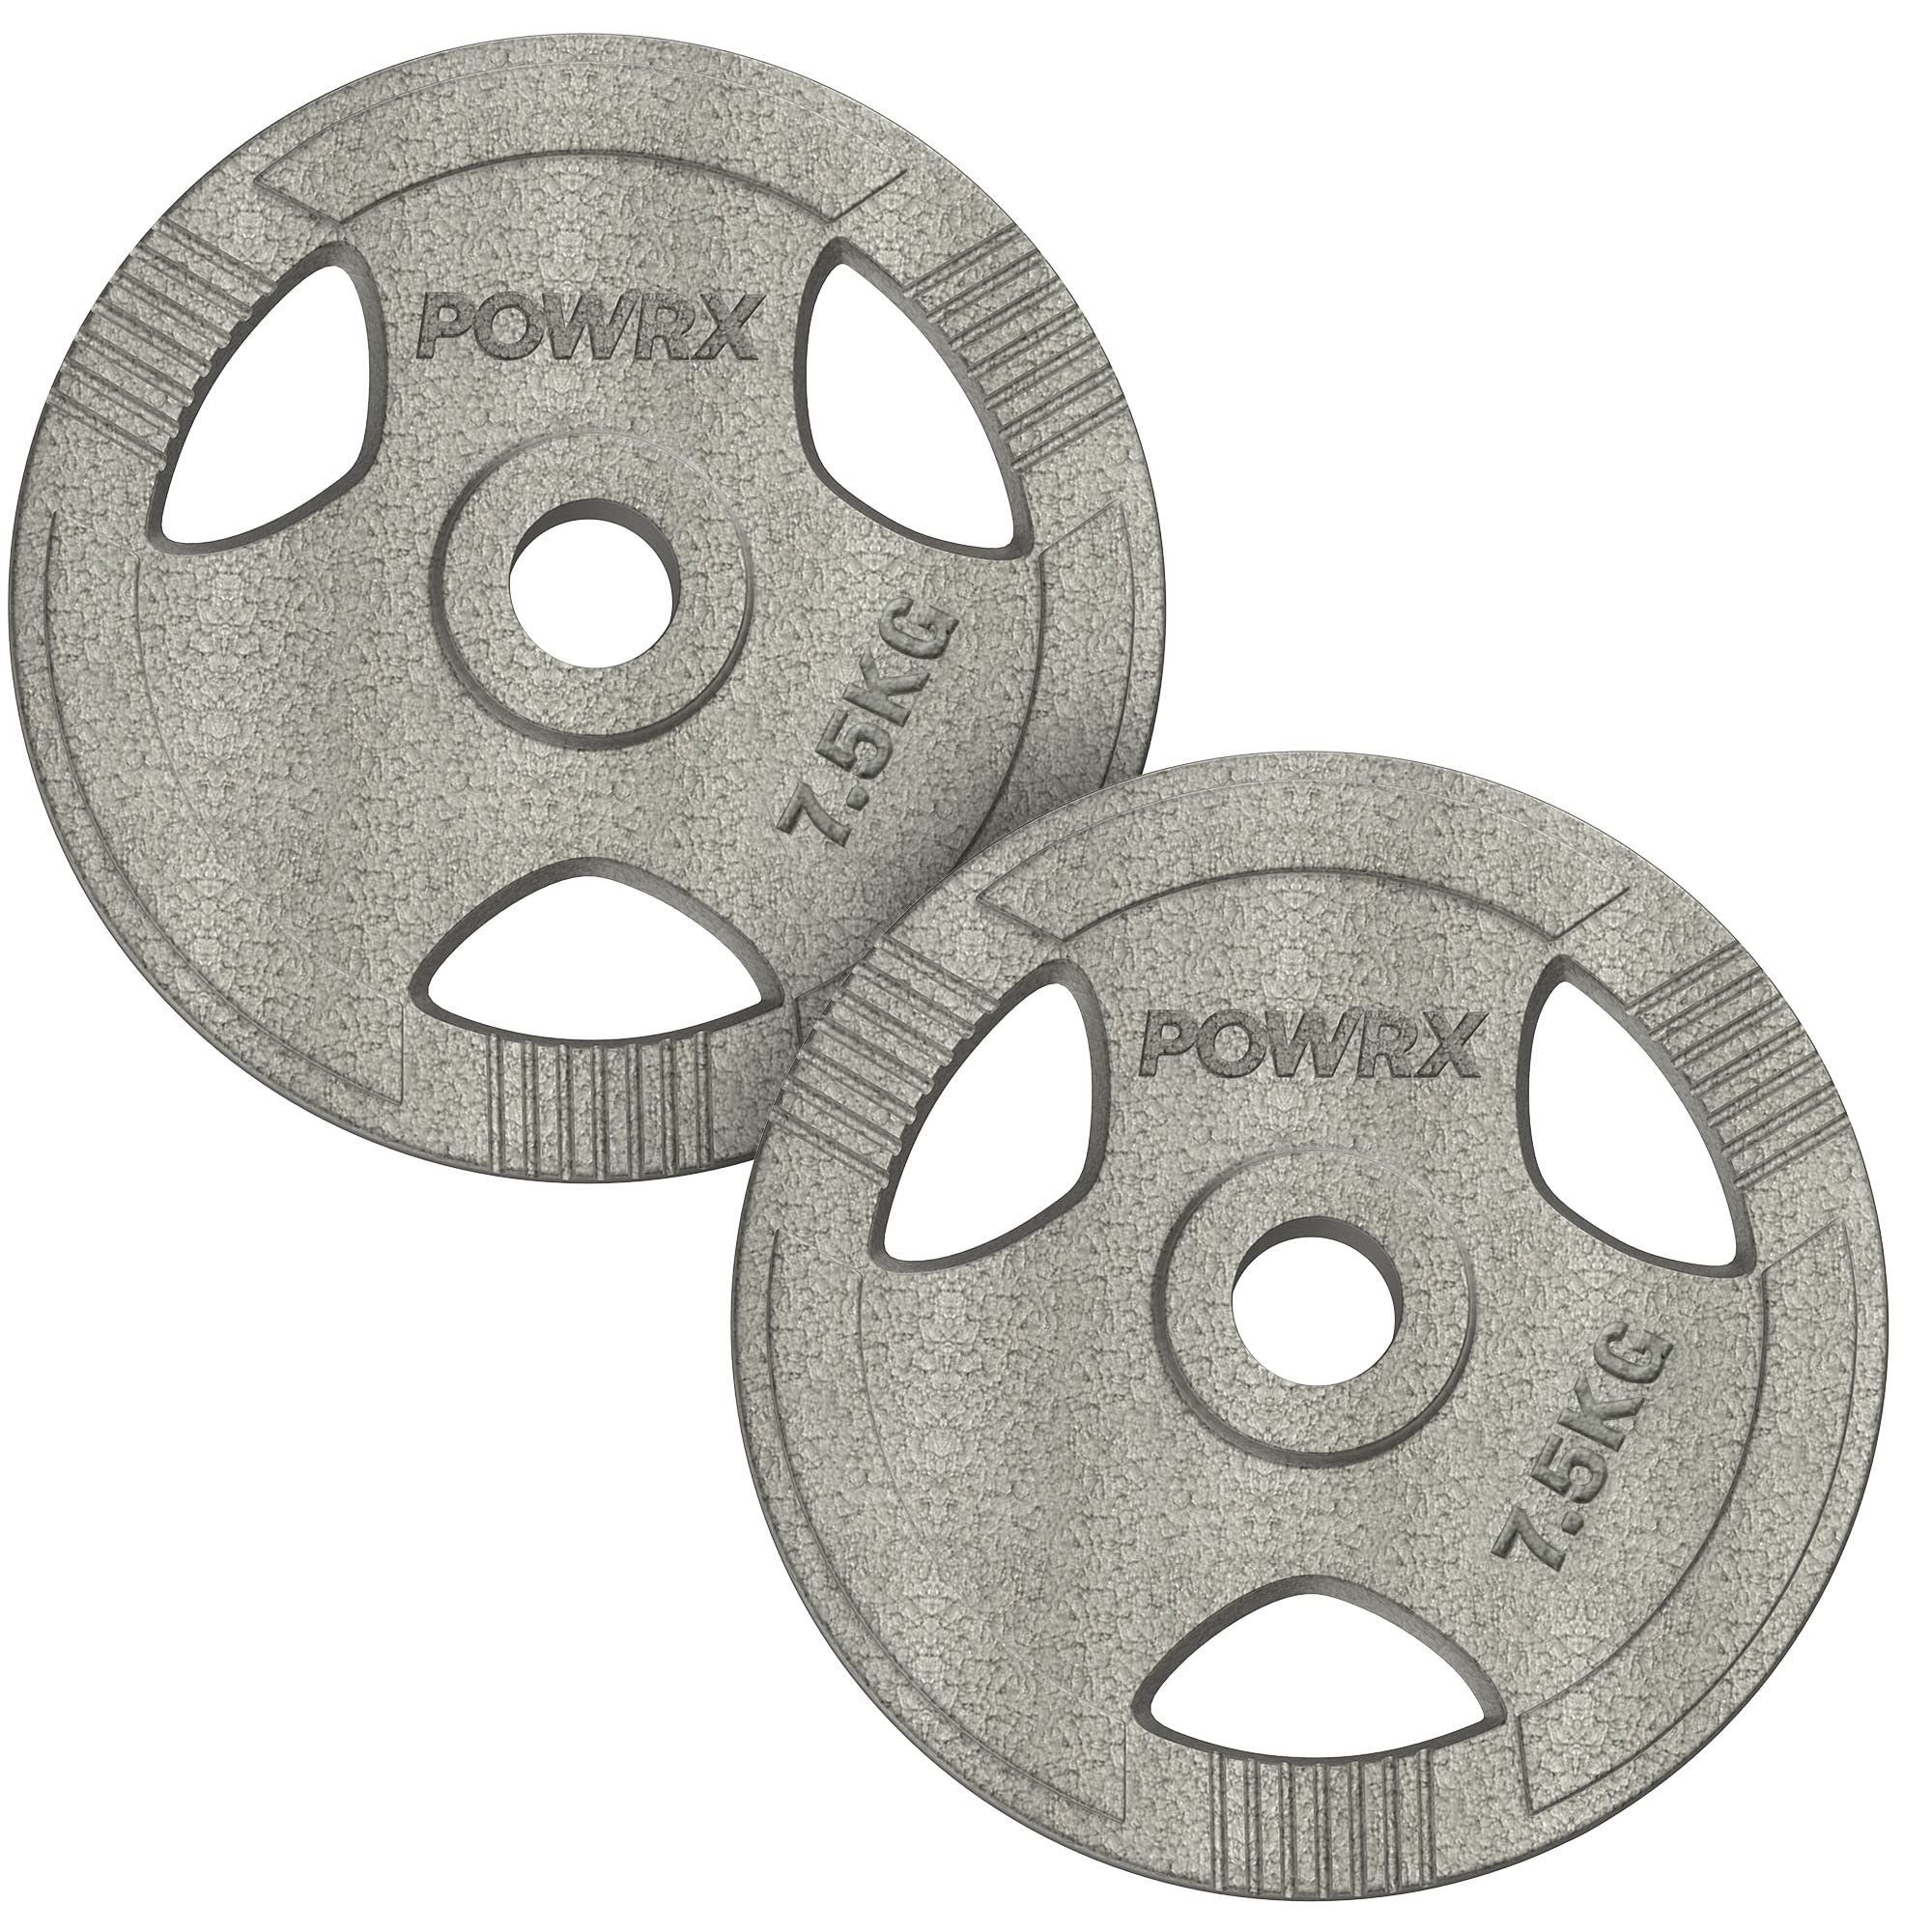 POWRX Hantelscheiben Hantelscheiben 2,5-40 kg, 2er Set 50 mm, 5kg Set (2x2,5kg) Gusseisen